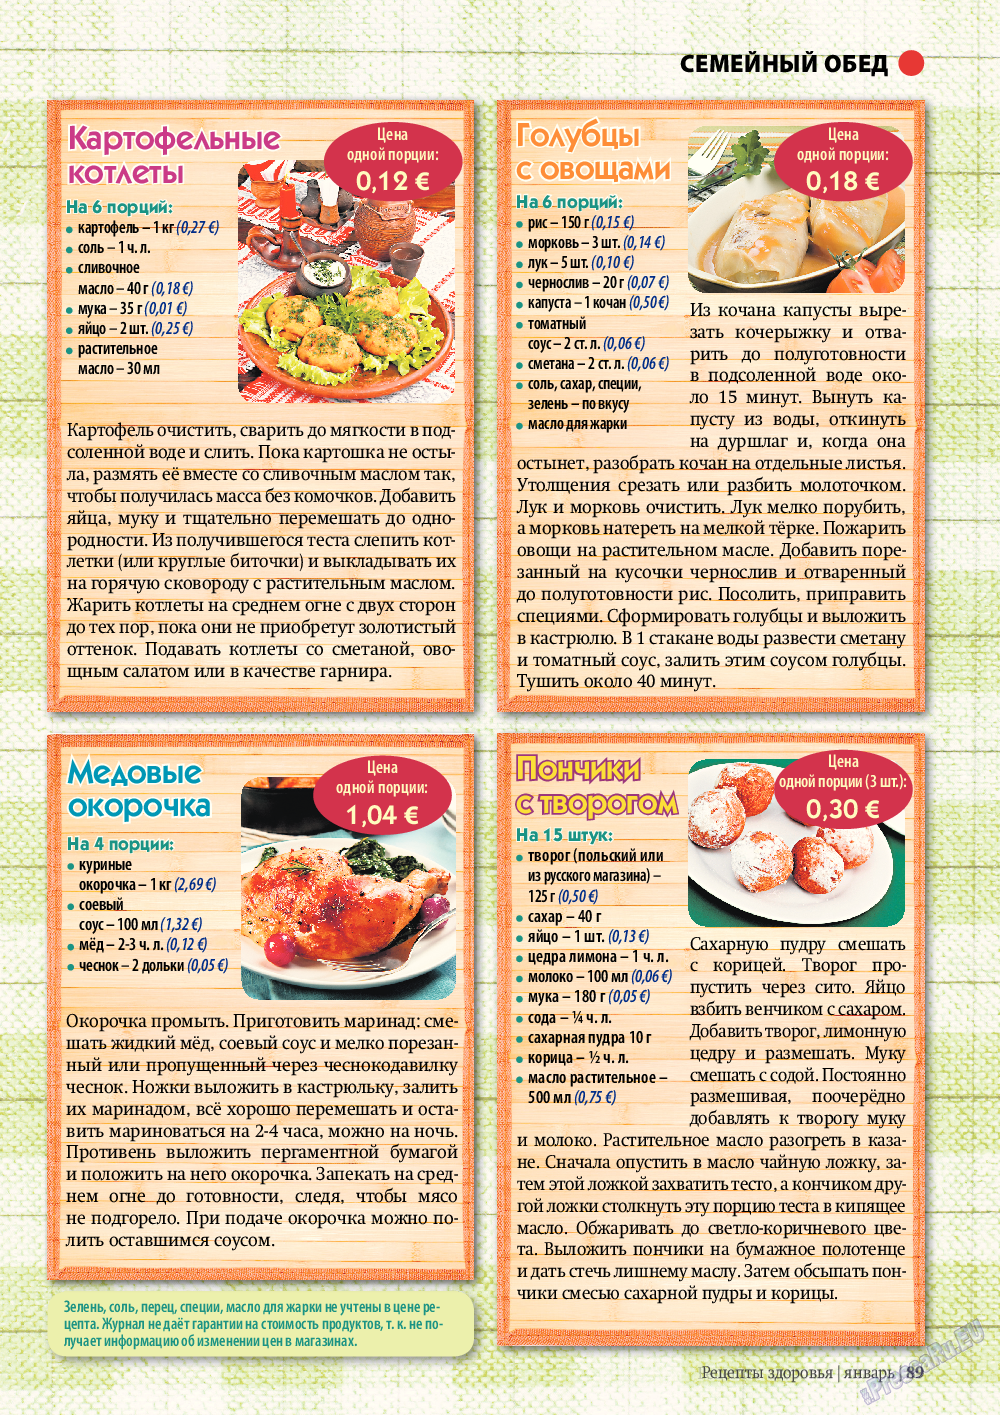 Рецепты здоровья, журнал. 2012 №1 стр.89